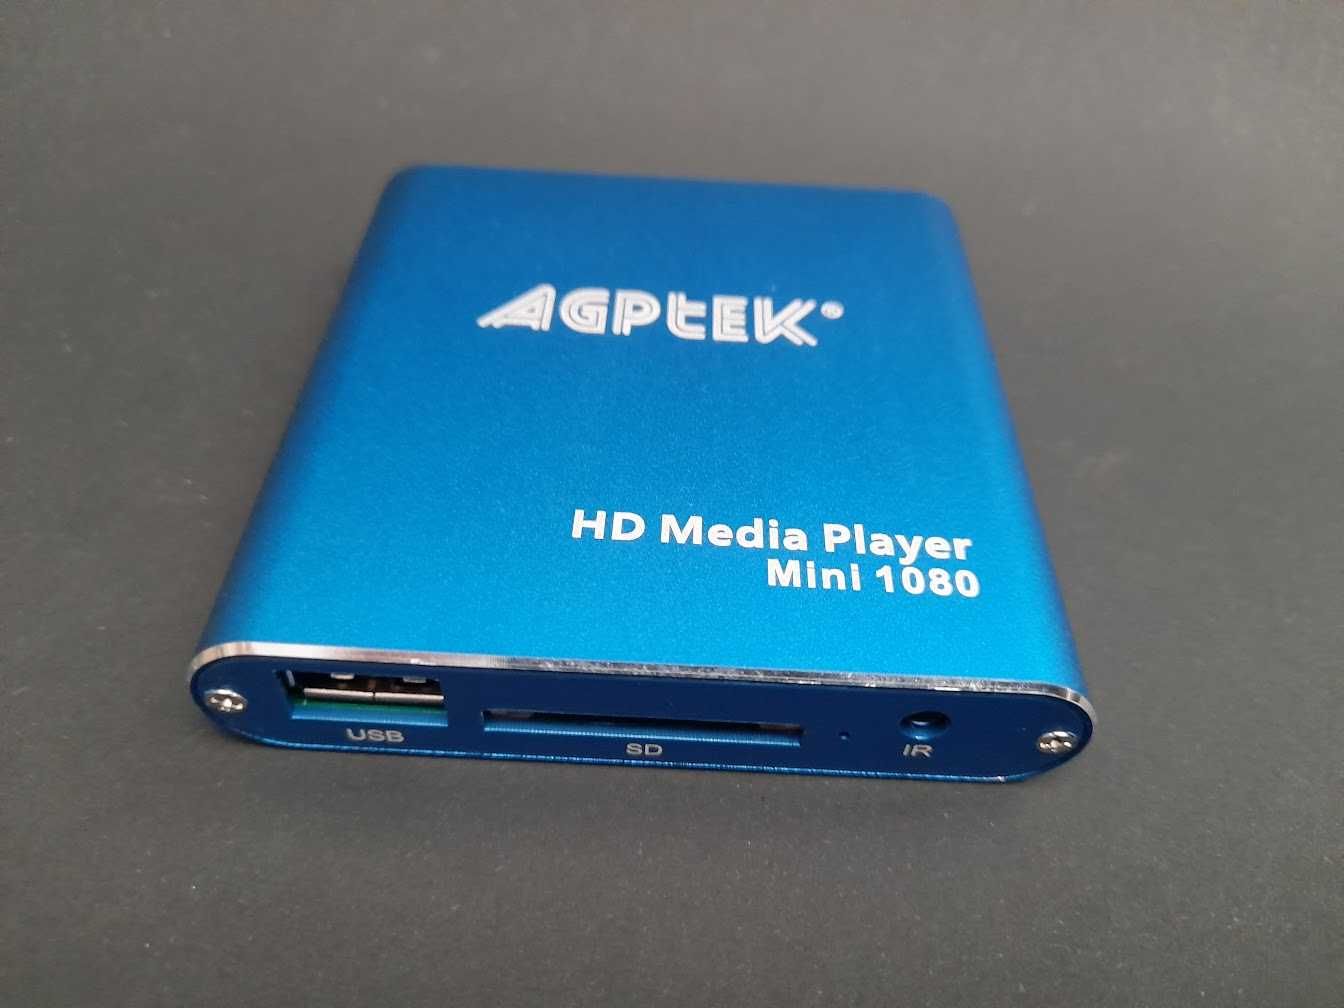 HD Media Player, AGPtek Mini 1080p Full-HD